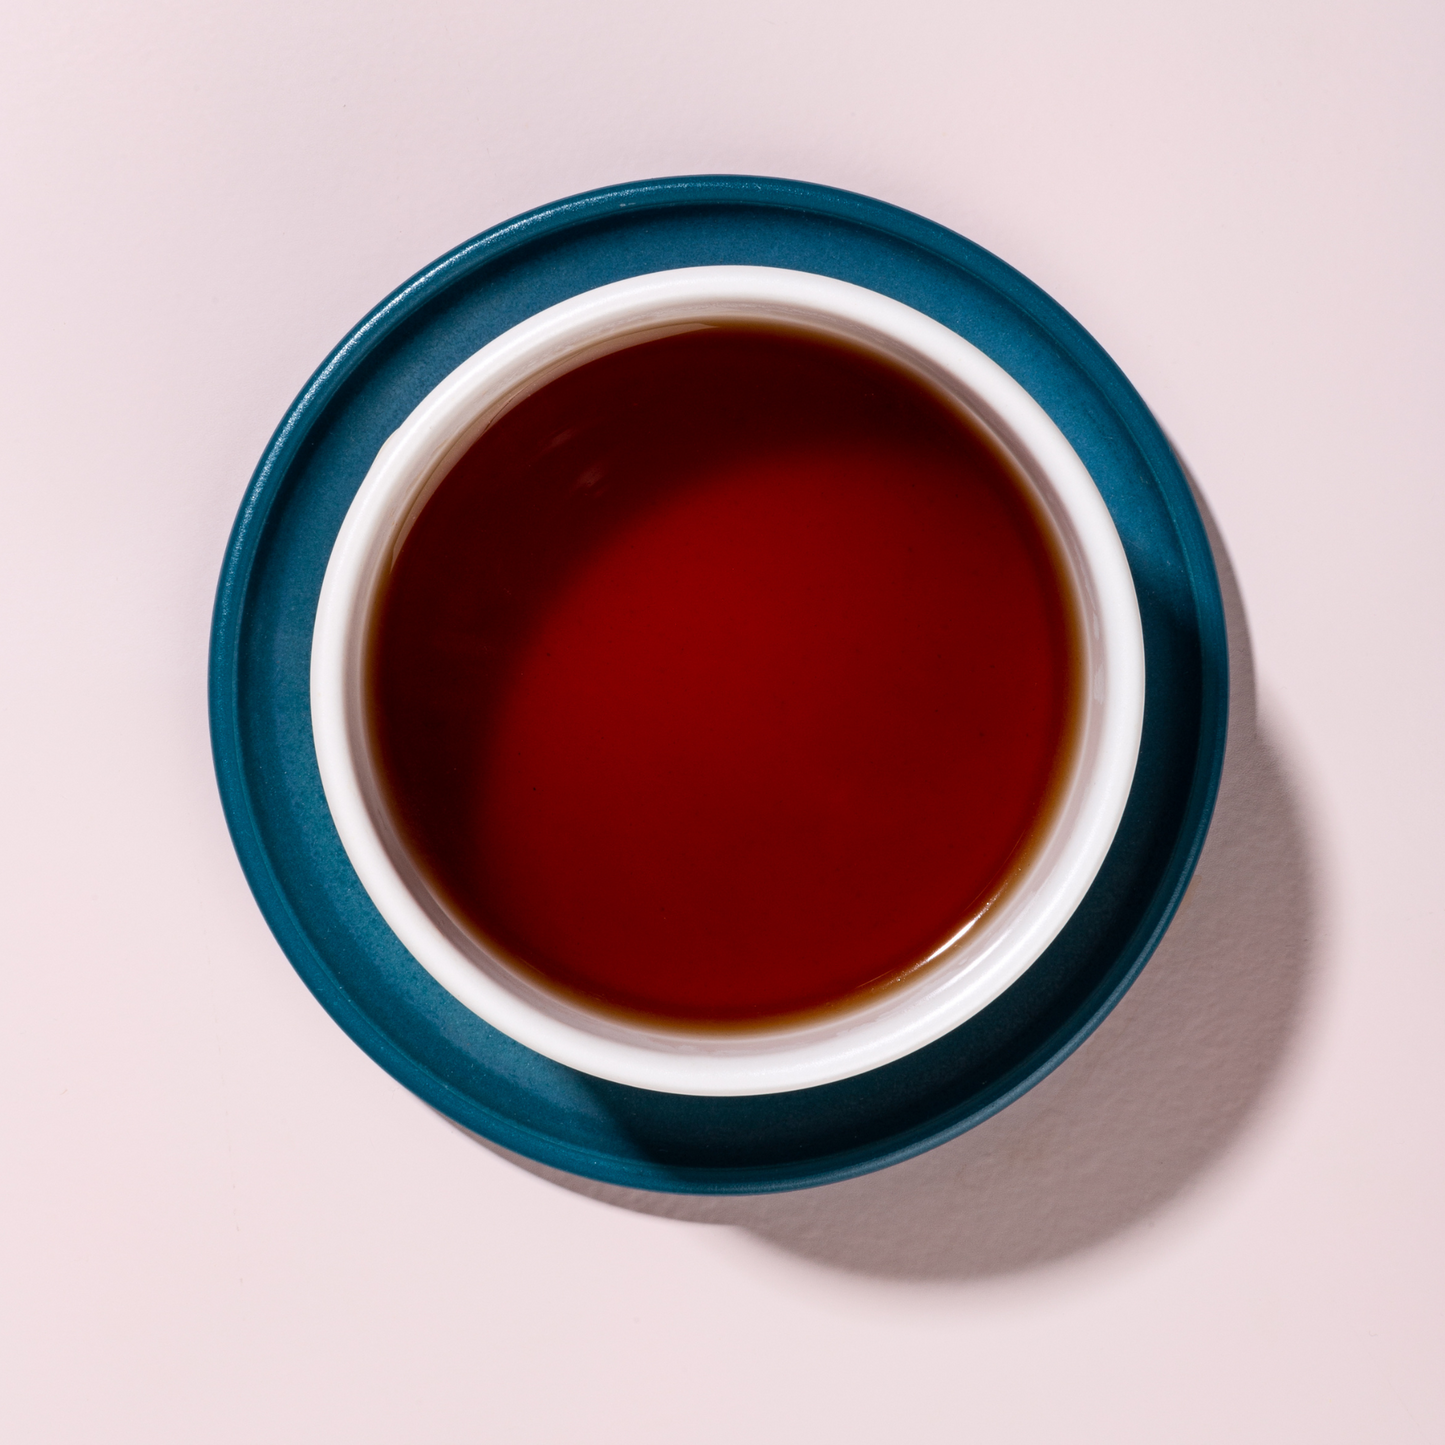 Elevate Sips by Joya Tea in Mug